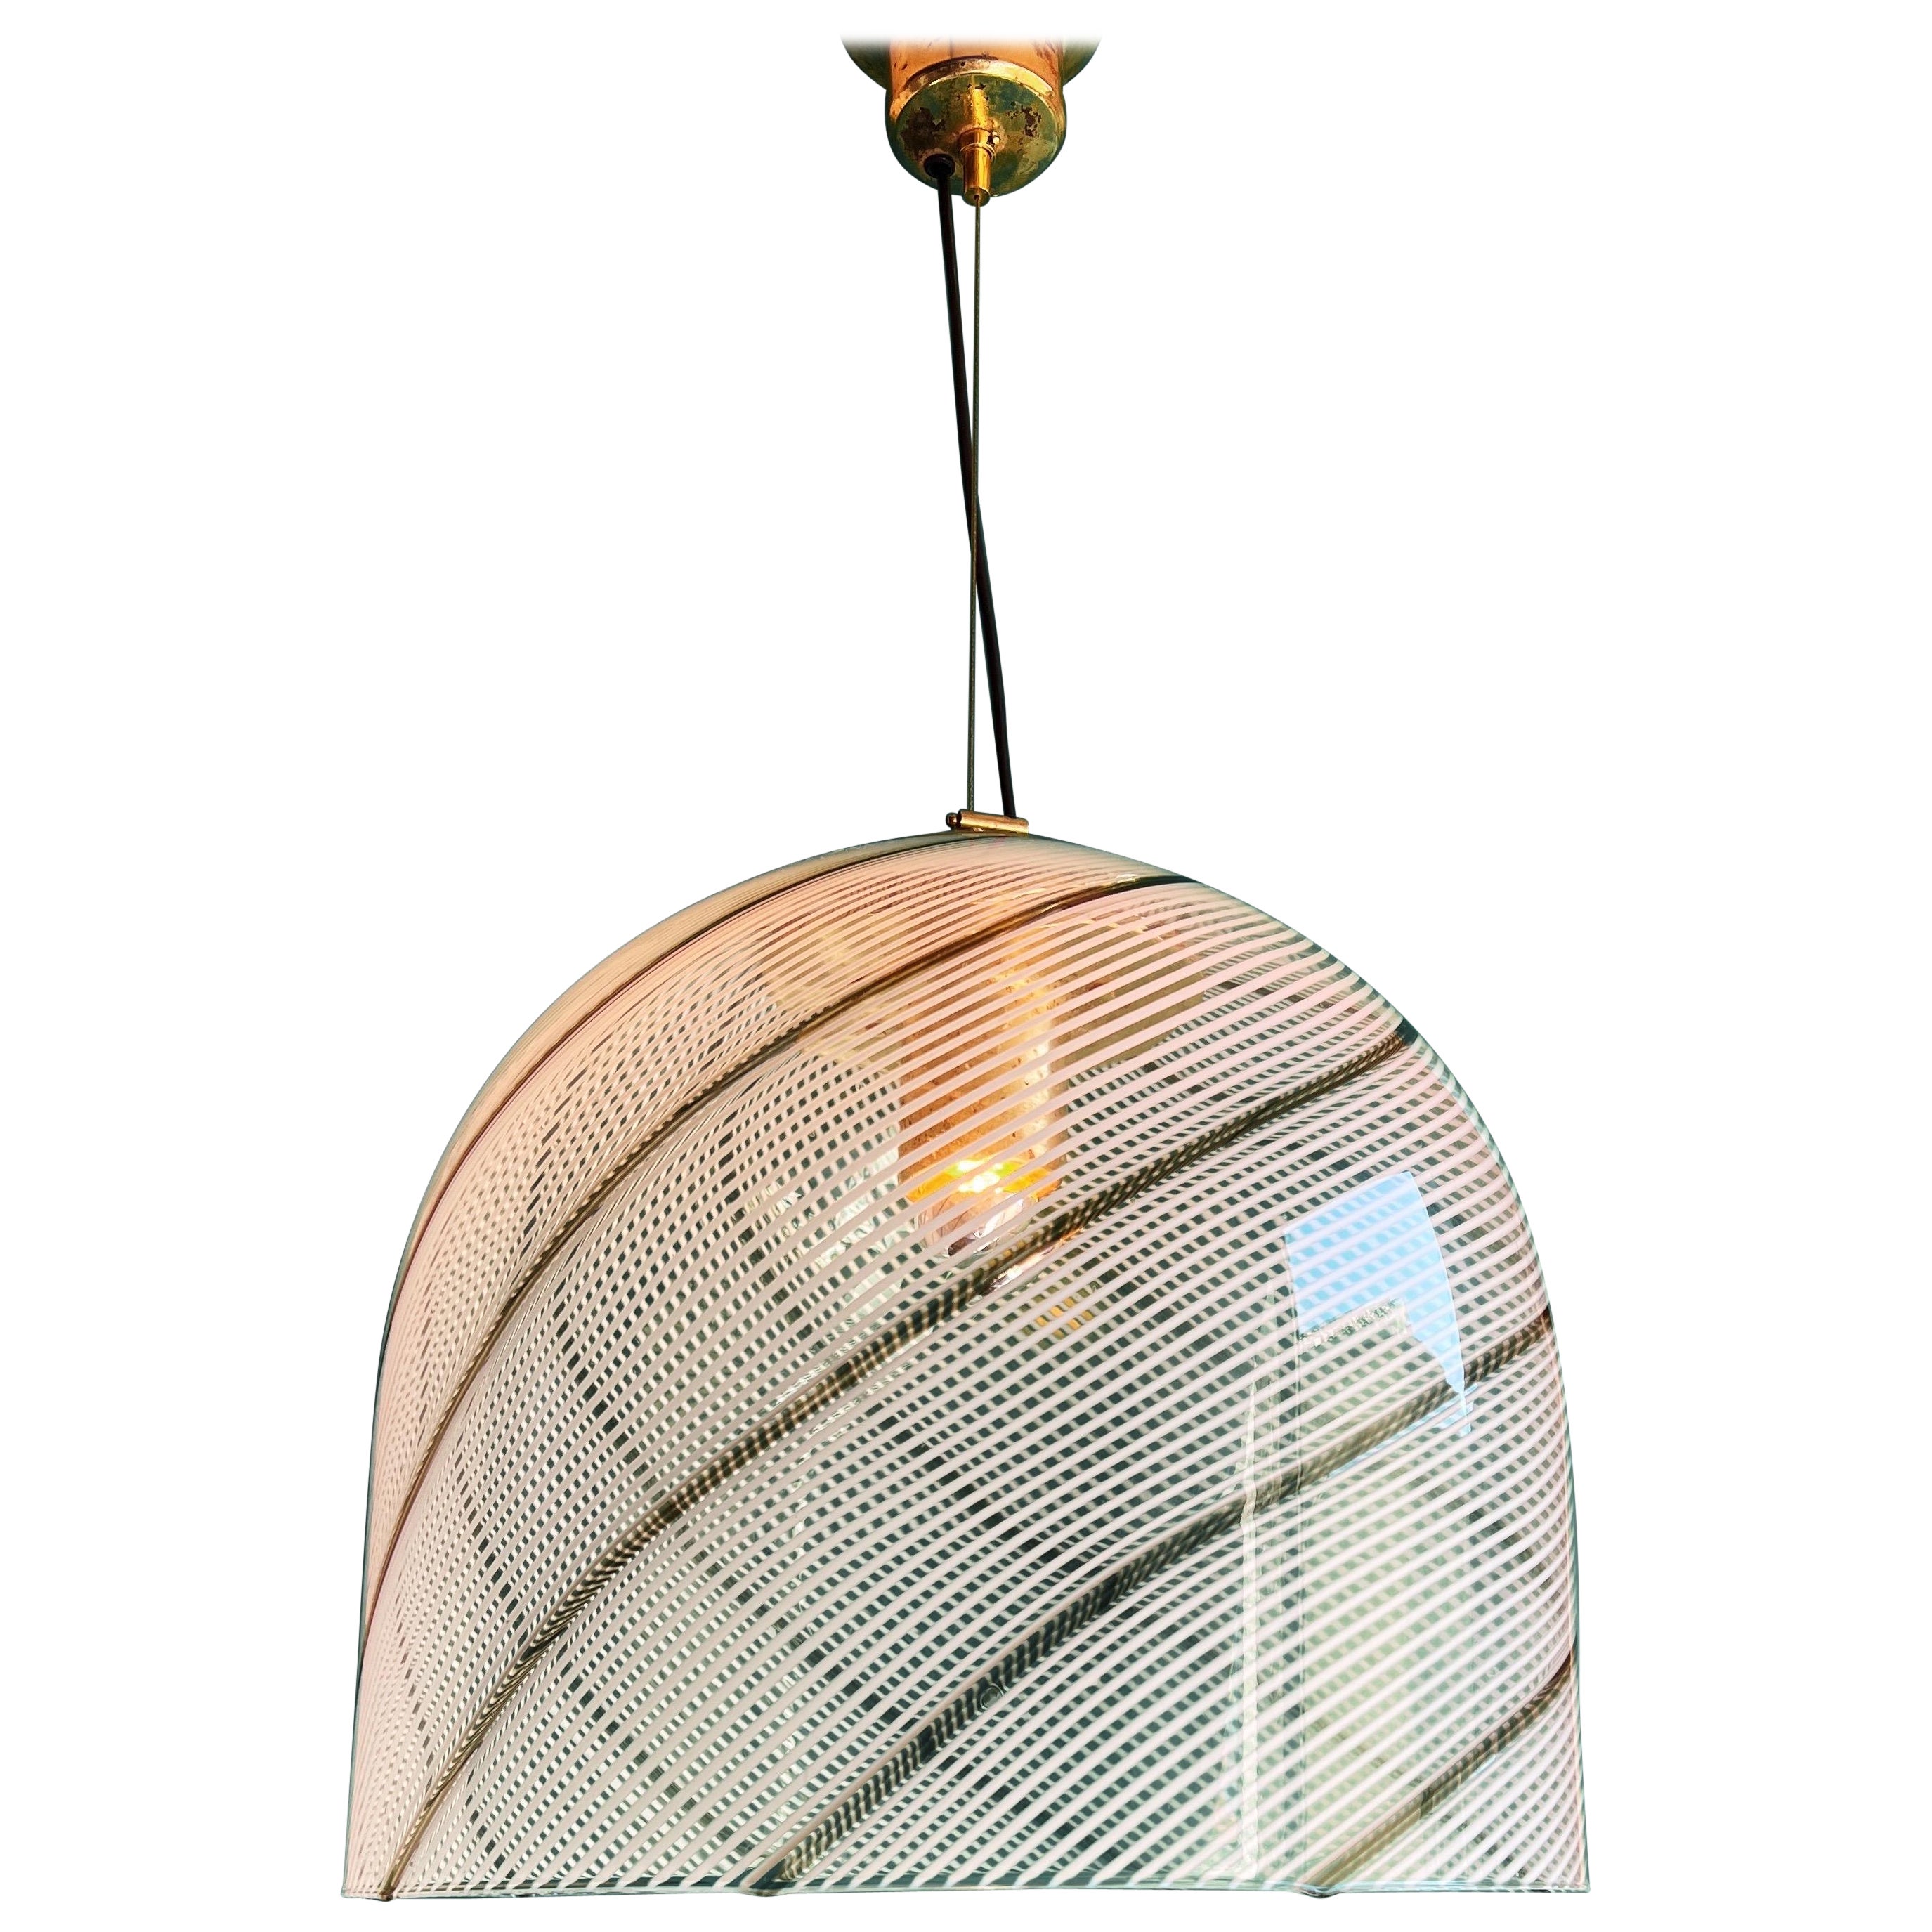 Vintage swirl Murano glass pendant lamp In the style of Venini, circa 1970s.